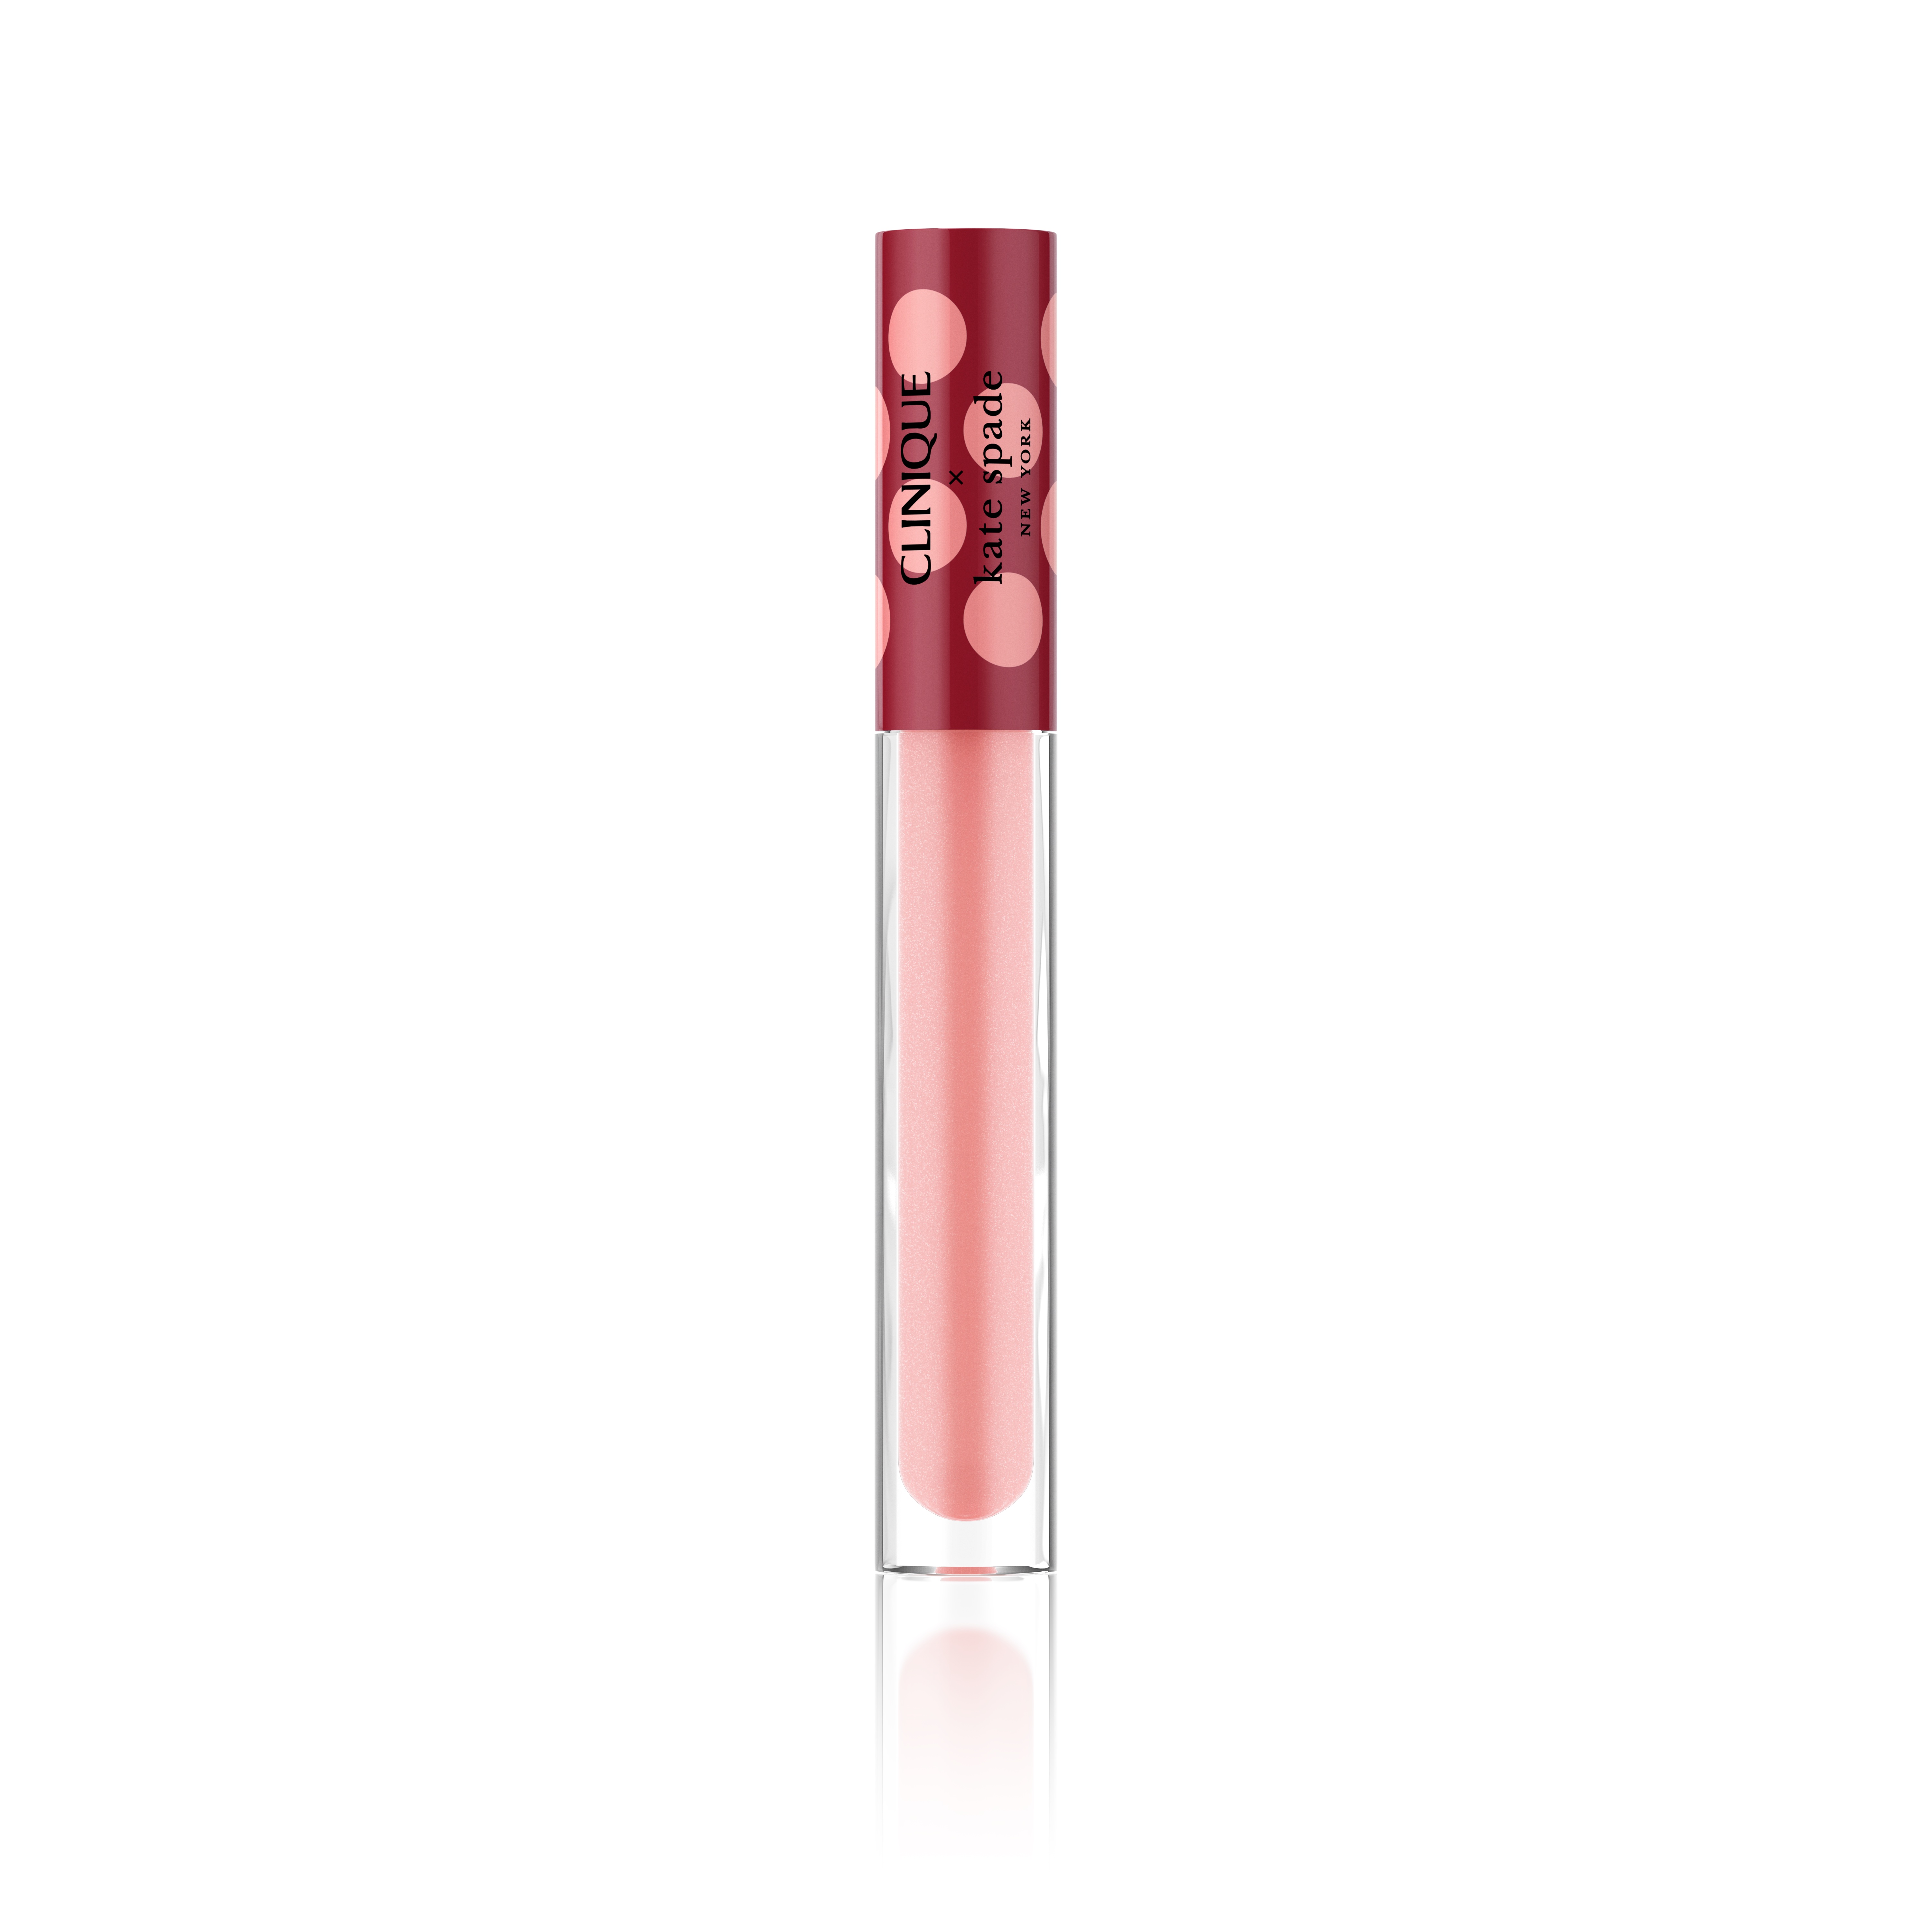 Clinique’s Pop Plush Creamy Lip Gloss